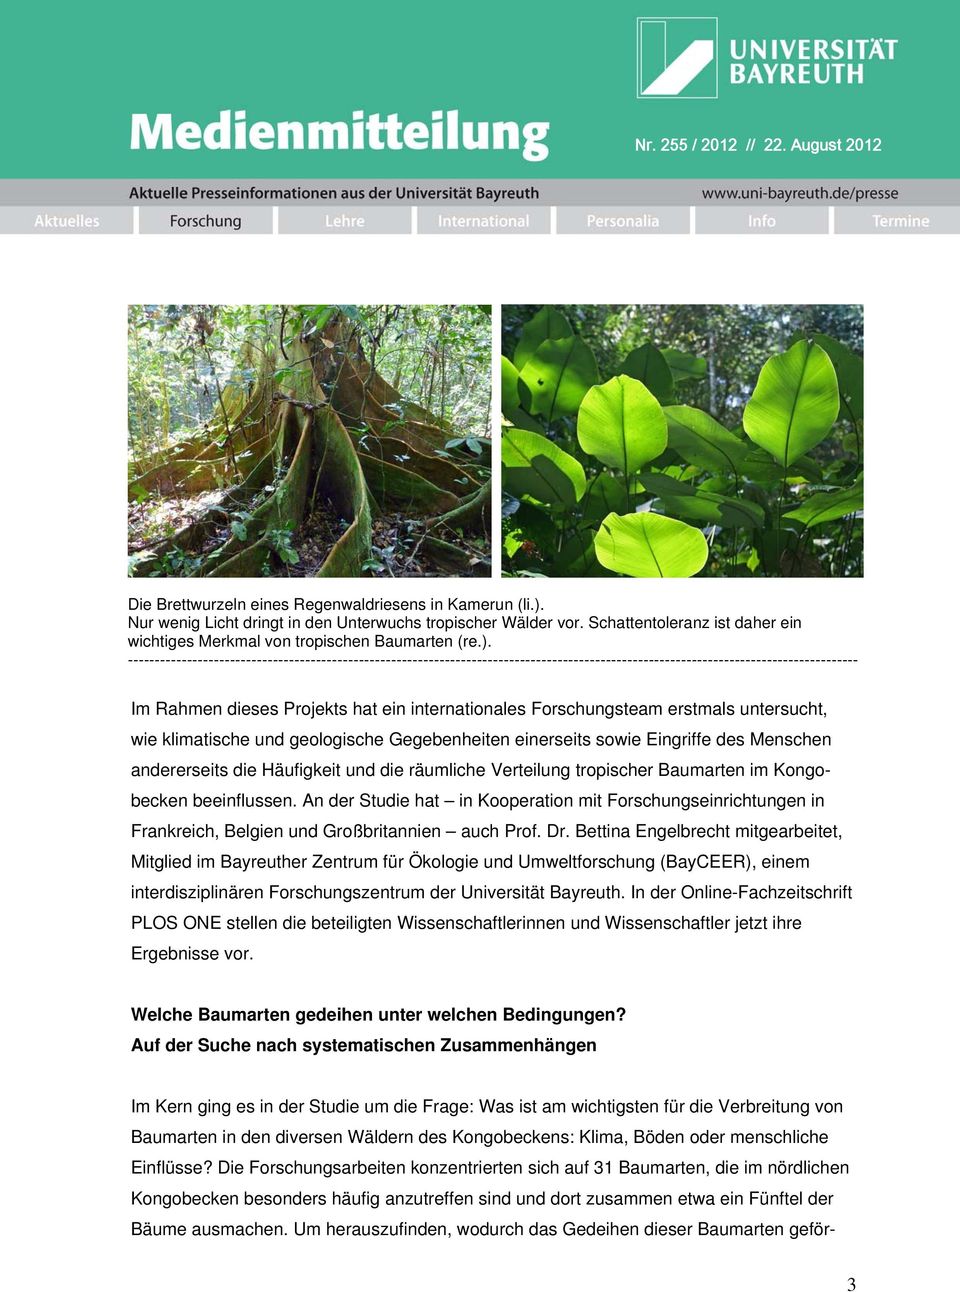 Forschungsteam erstmals untersucht, wie klimatische und geologische Gegebenheiten einerseits sowie Eingriffe des Menschen andererseits die Häufigkeit und die räumliche Verteilung tropischer Baumarten